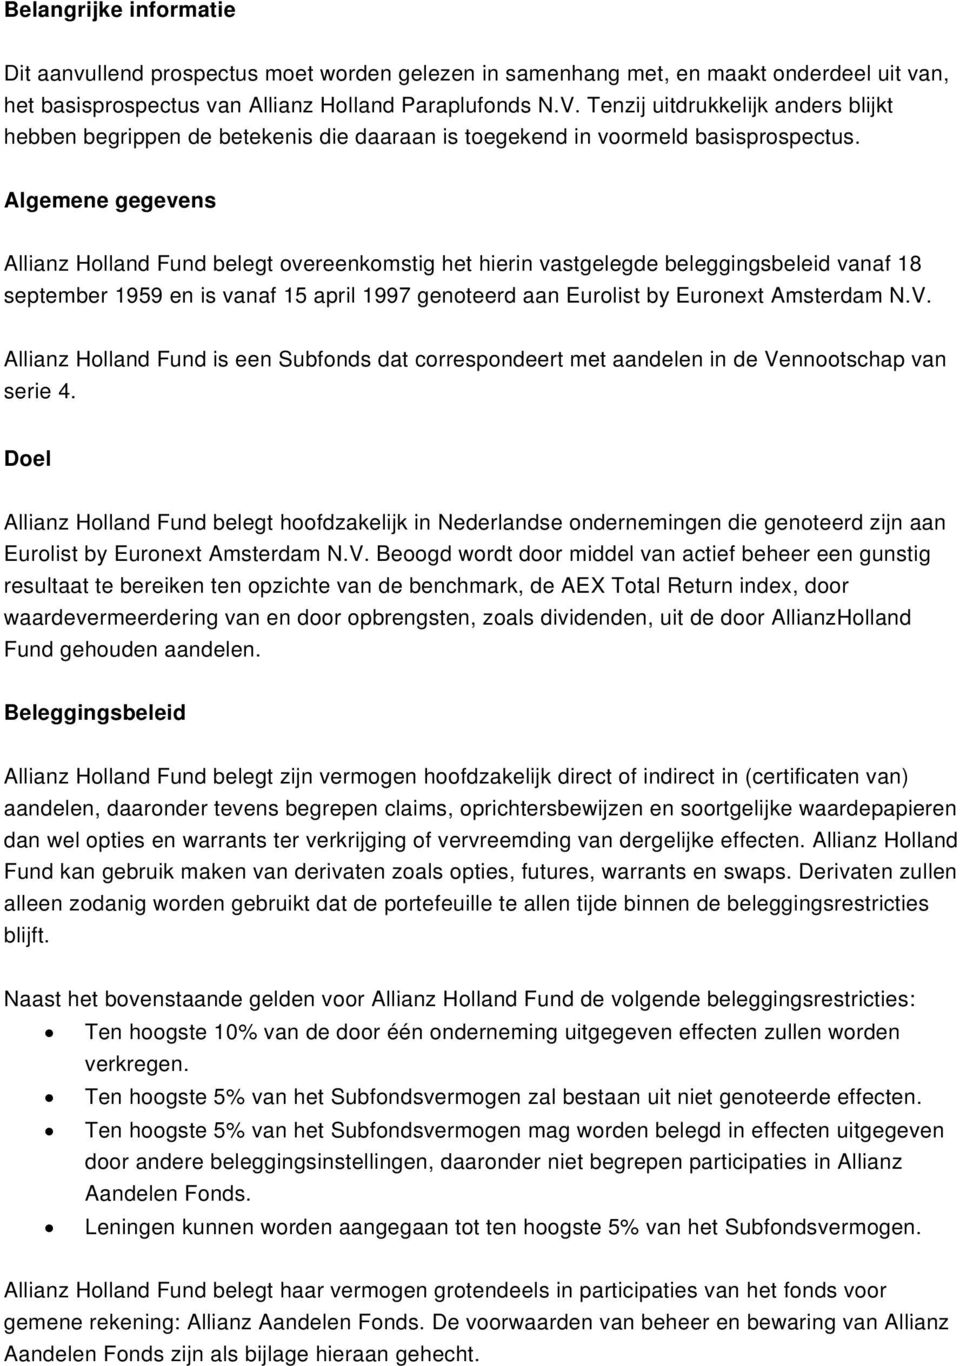 Algemene gegevens Allianz Holland Fund belegt overeenkomstig het hierin vastgelegde beleggingsbeleid vanaf 18 september 1959 en is vanaf 15 april 1997 genoteerd aan Eurolist by Euronext Amsterdam N.V.